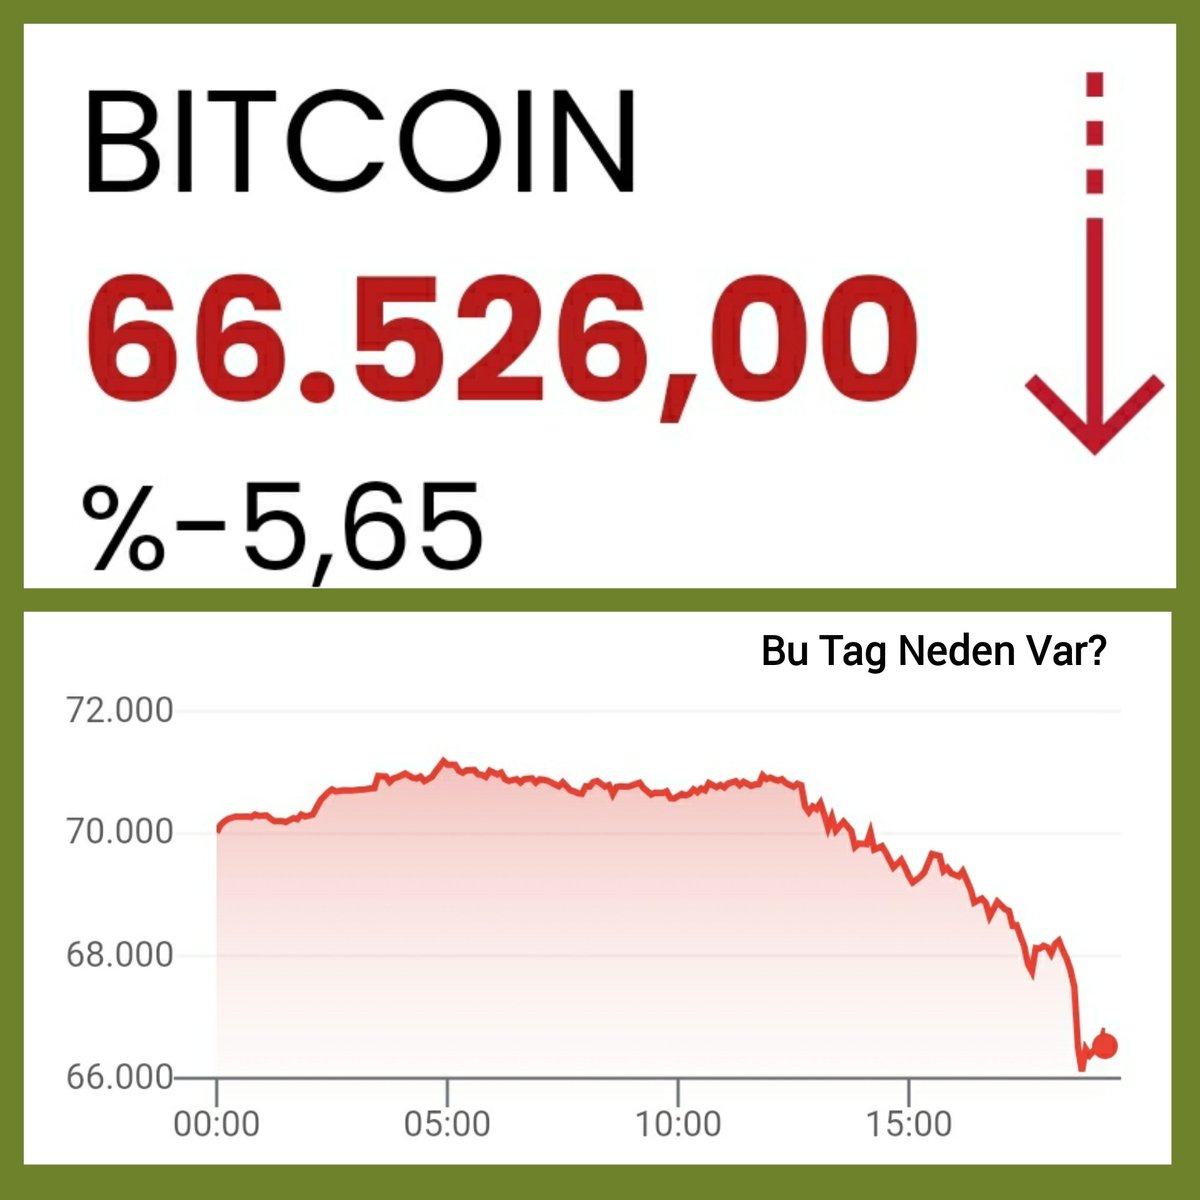 (#Bitcoin) X'teki bu başlık; Bitcoin'deki düşüş hakkında yapılan yorumlar sebebiyle oluşmuştur.